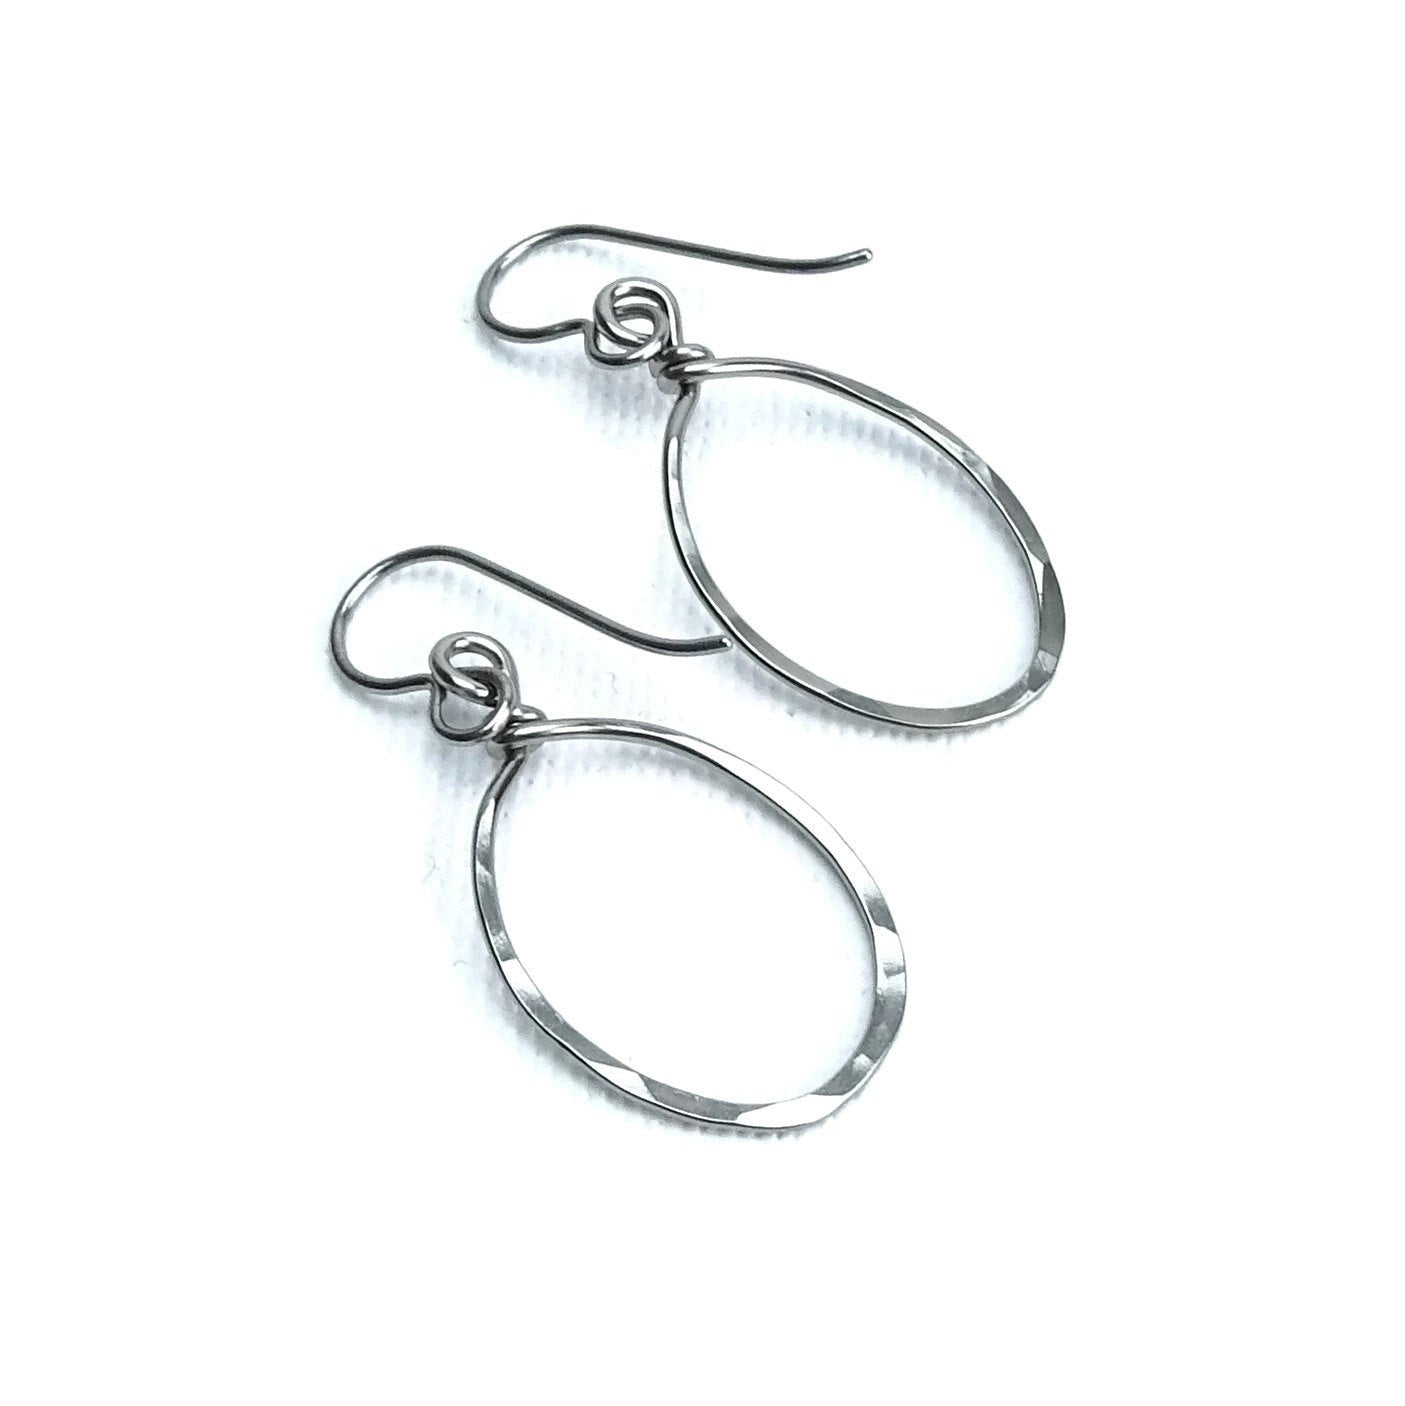 Niobium Earrings Oval Hoops, Hypoallergenic Titanium Earrings for Sensitive Ears, Hammered Silver Niobium Simple Modern Everyday Earrings